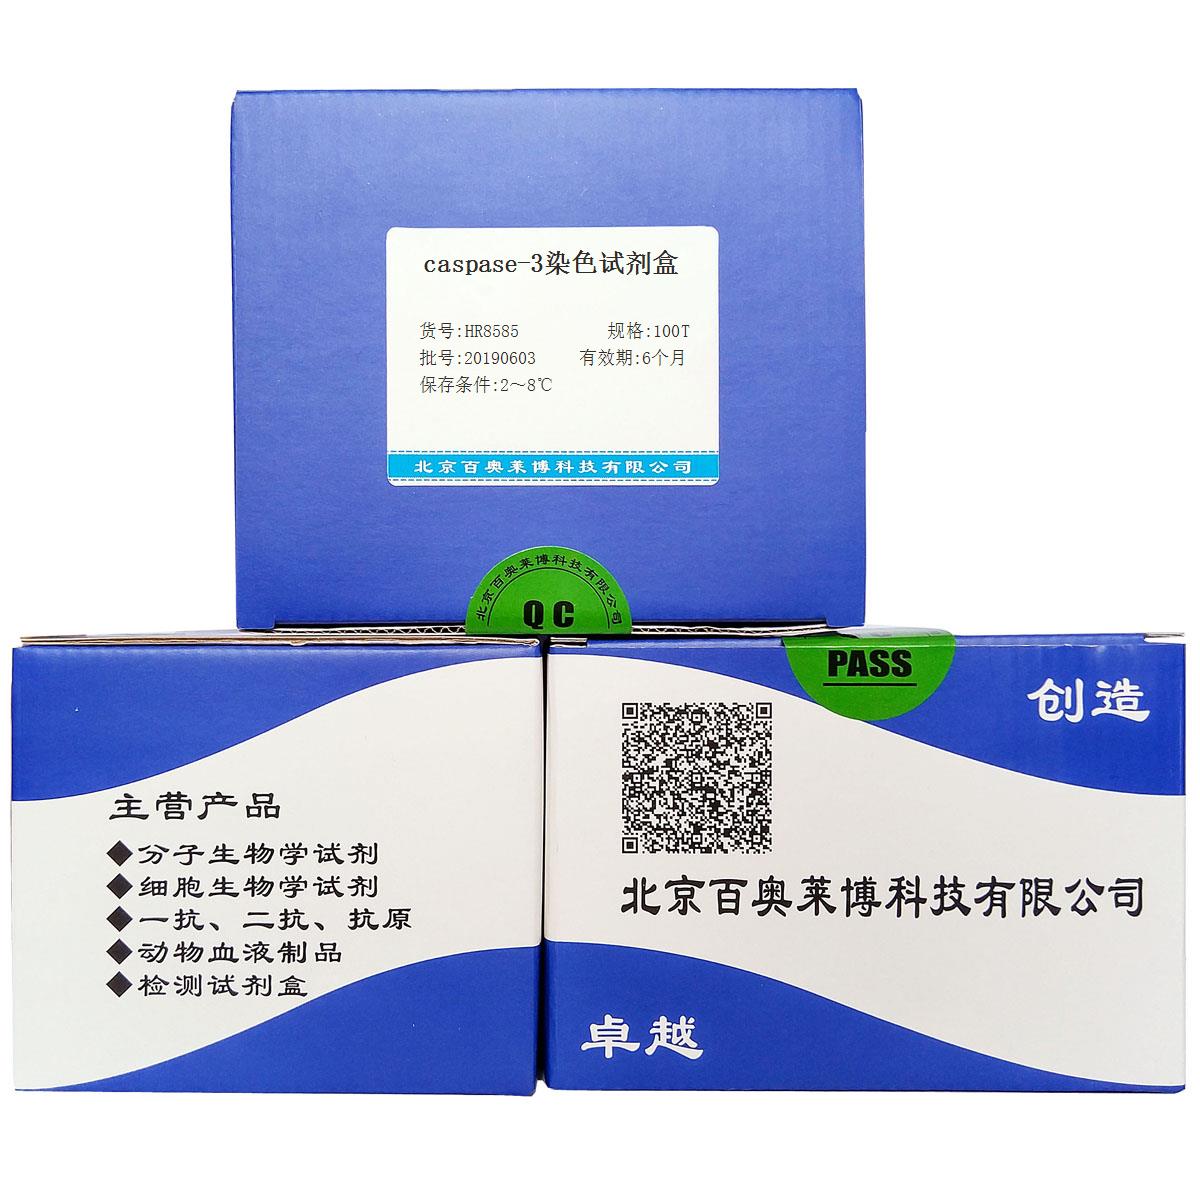 caspase-3染色试剂盒优惠促销